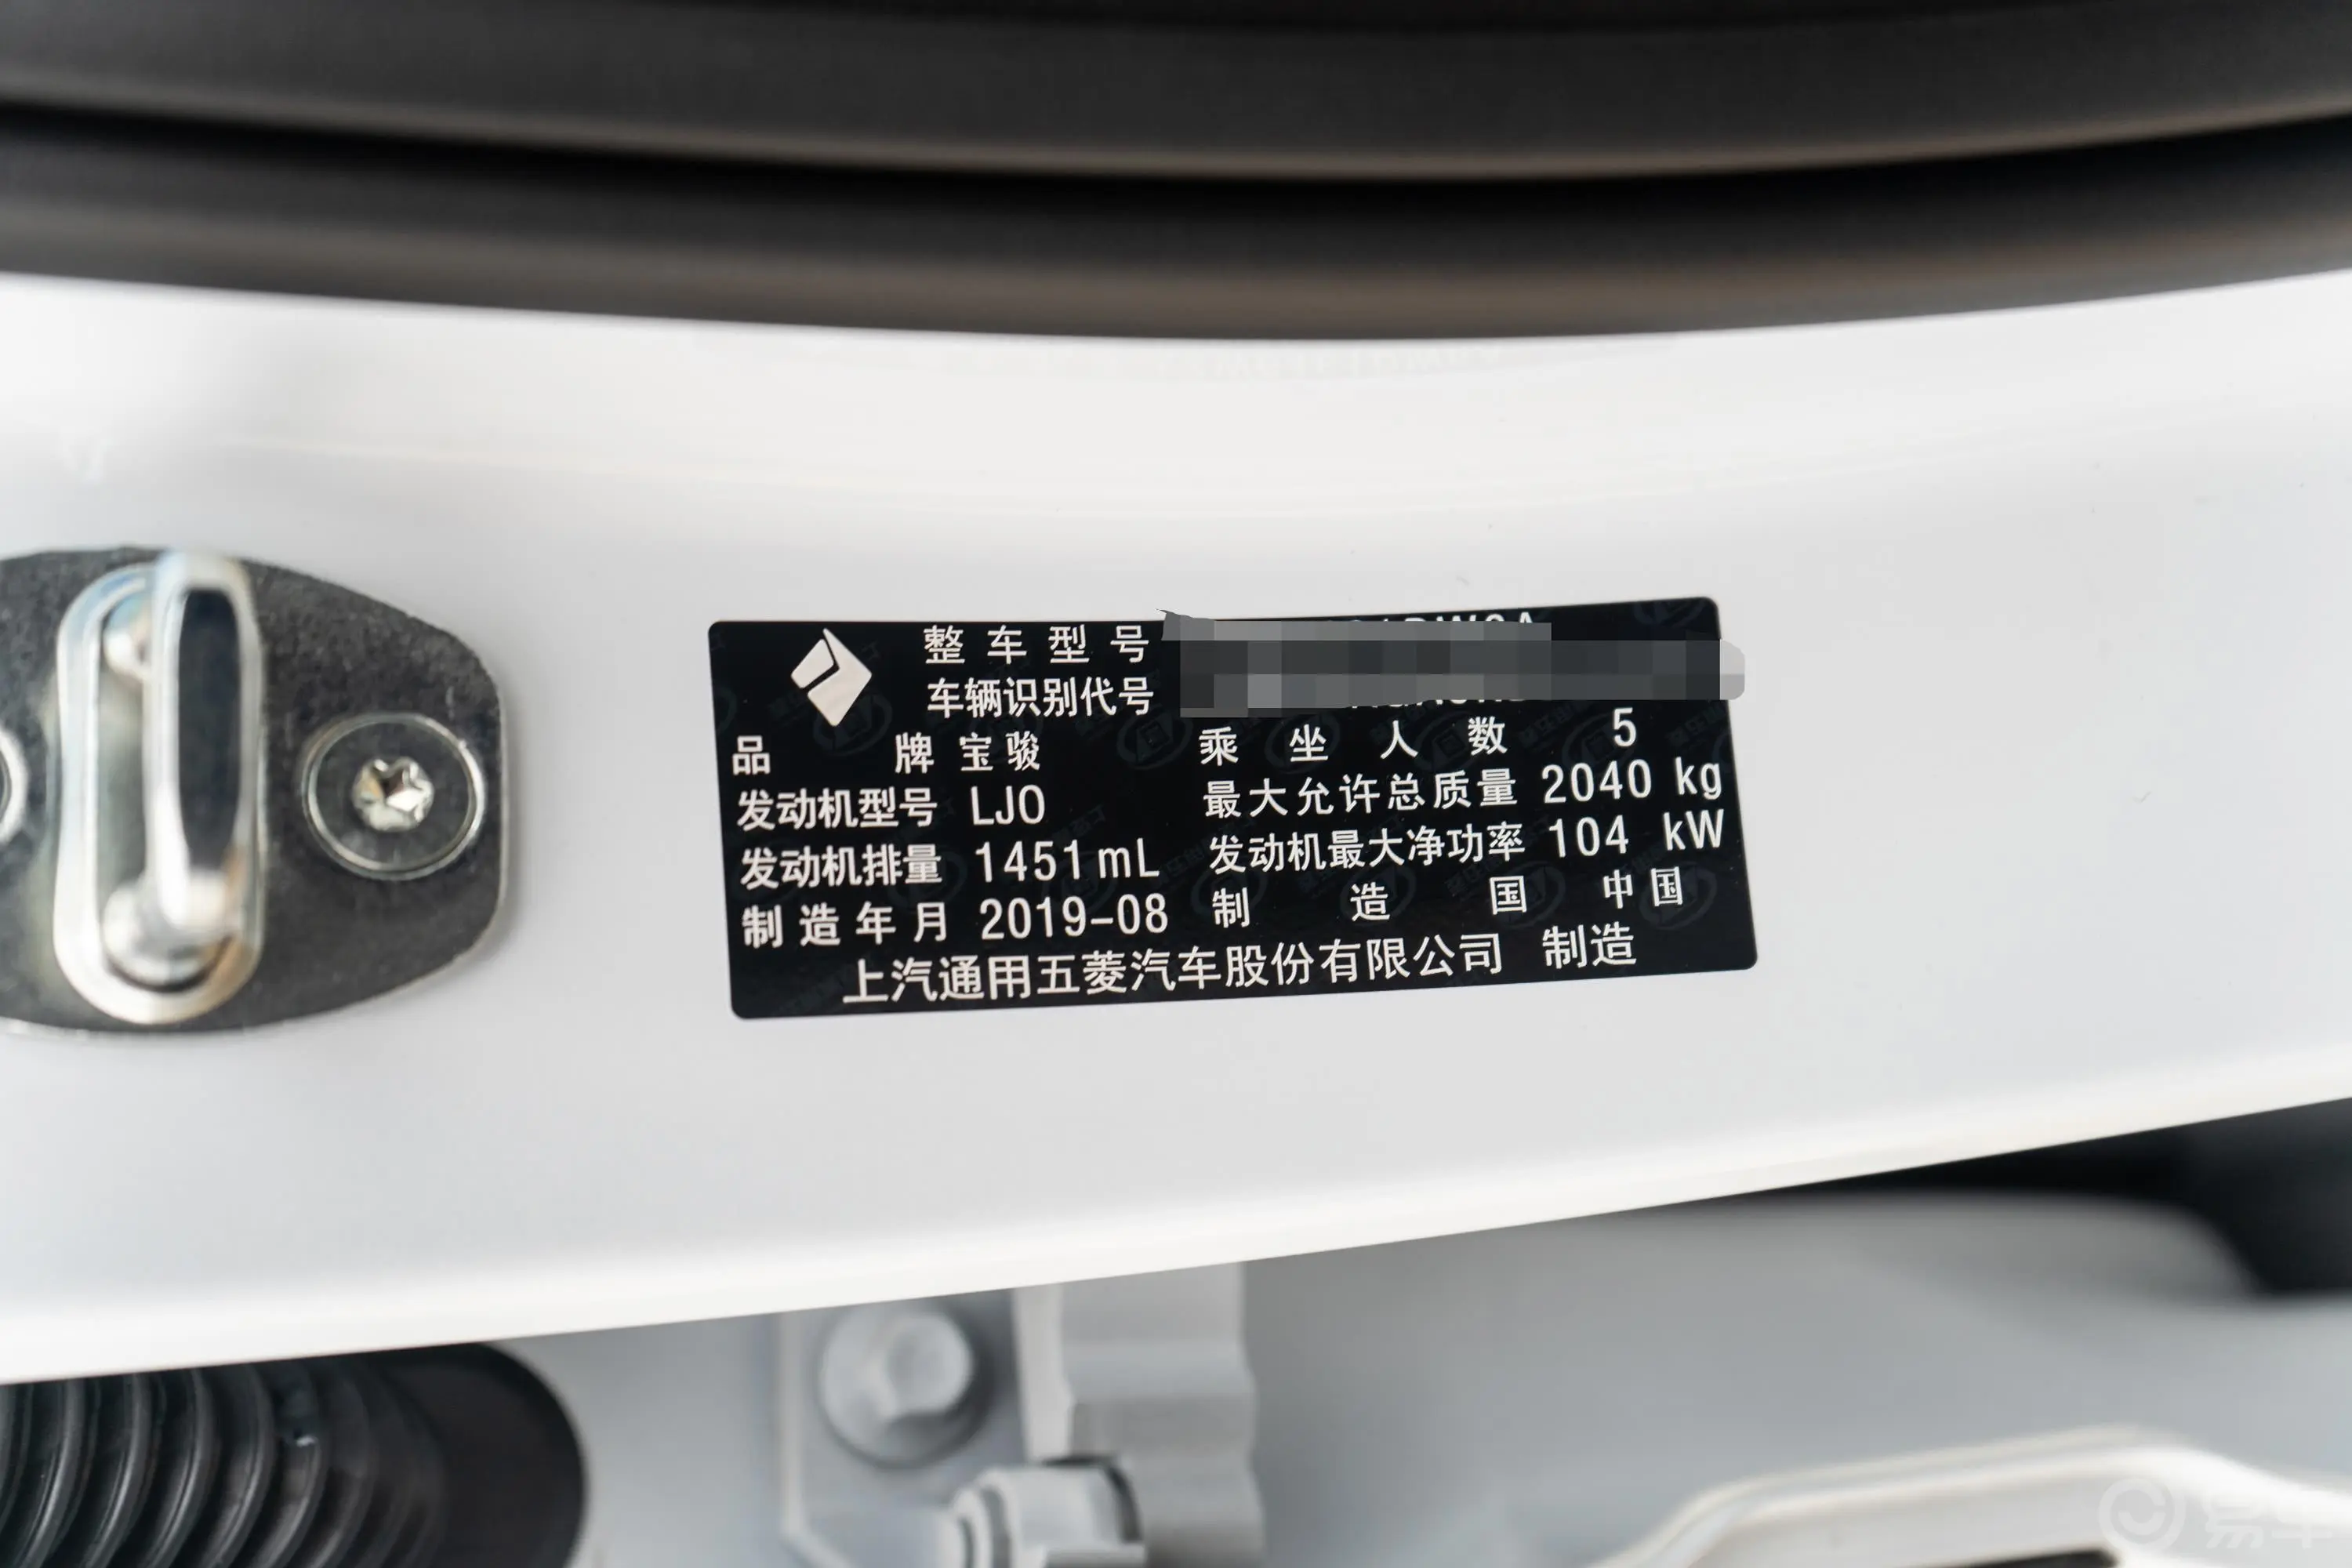 宝骏RS-51.5T CVT 超级互联潮动版 国VI车辆信息铭牌